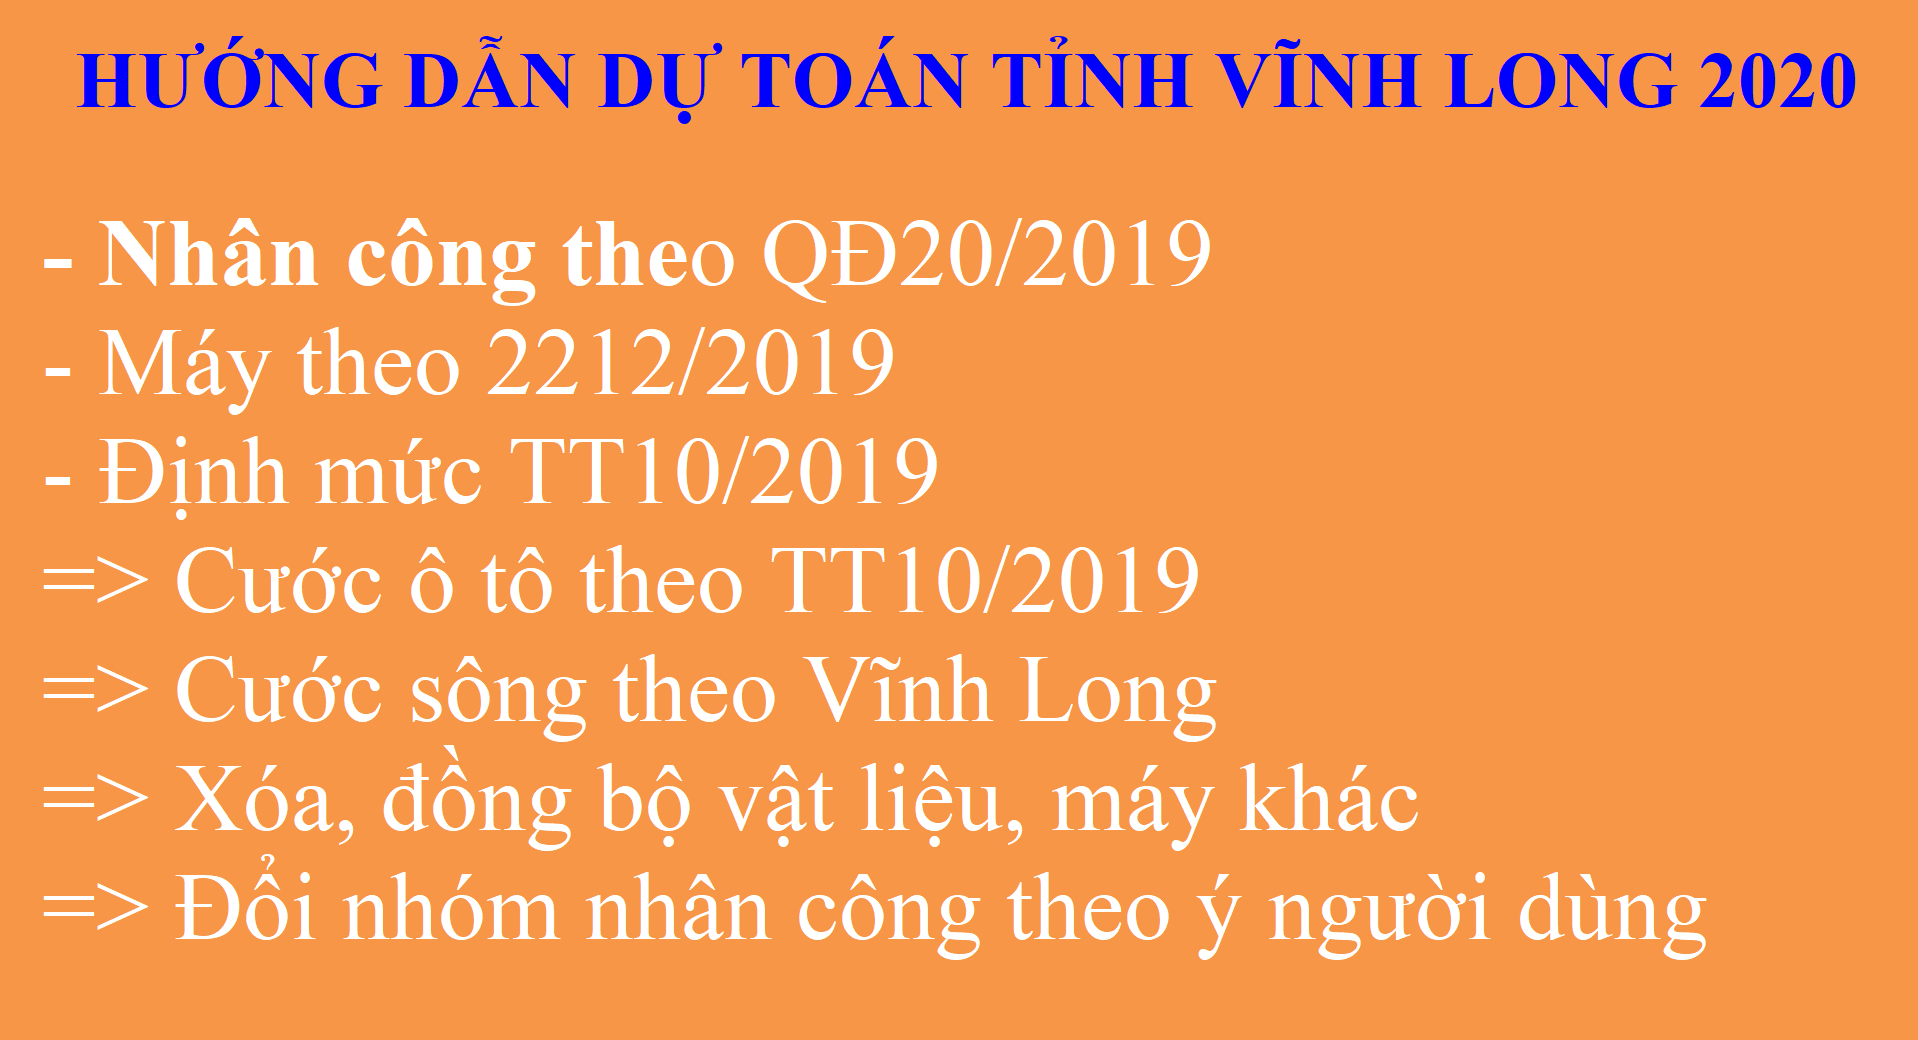 Hướng dẫn dự toán tỉnh Vĩnh Long 2020 nhân công QĐ20/2019 và Máy theo 2212/2019, định mức TT10/2019